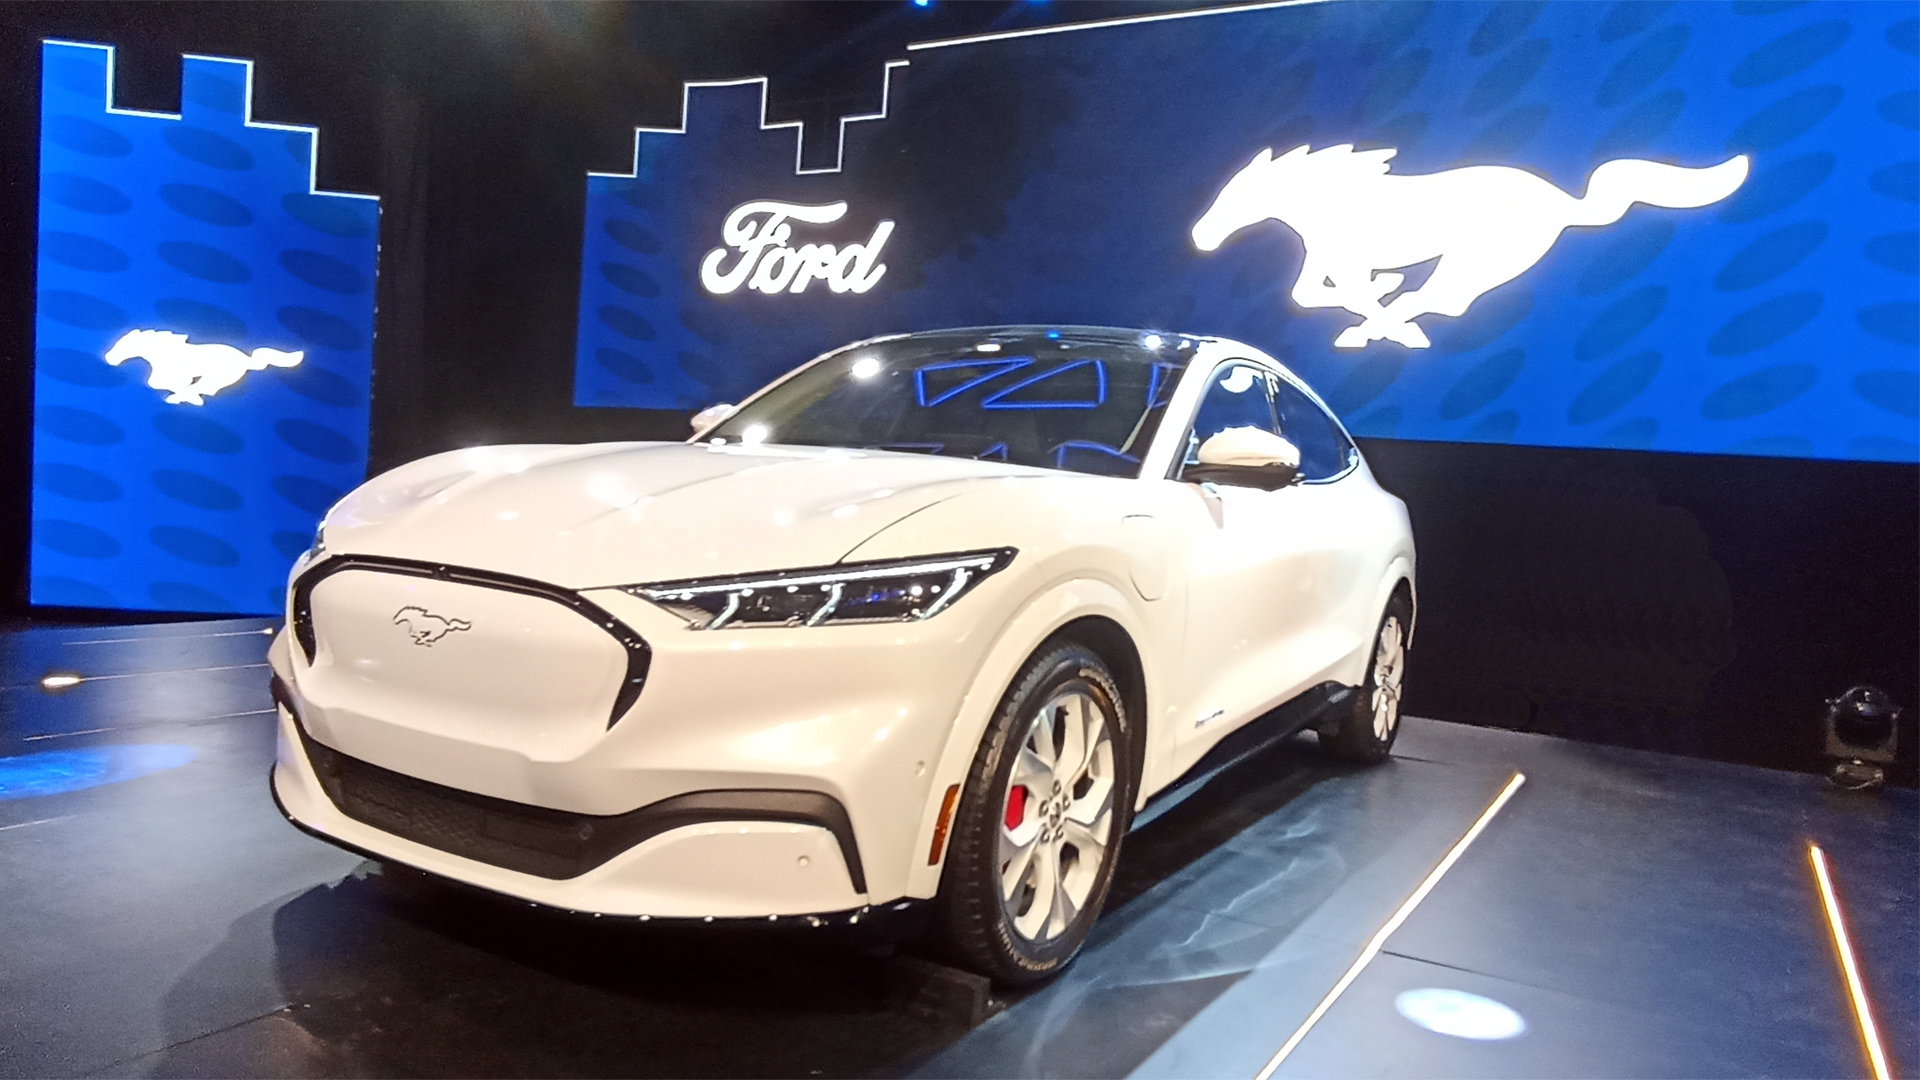 En EE.UU., detrás de los Tesla Model 3 y Model Y, se alineó el Ford Mustang Mach-E en tercer lugar de preferencia